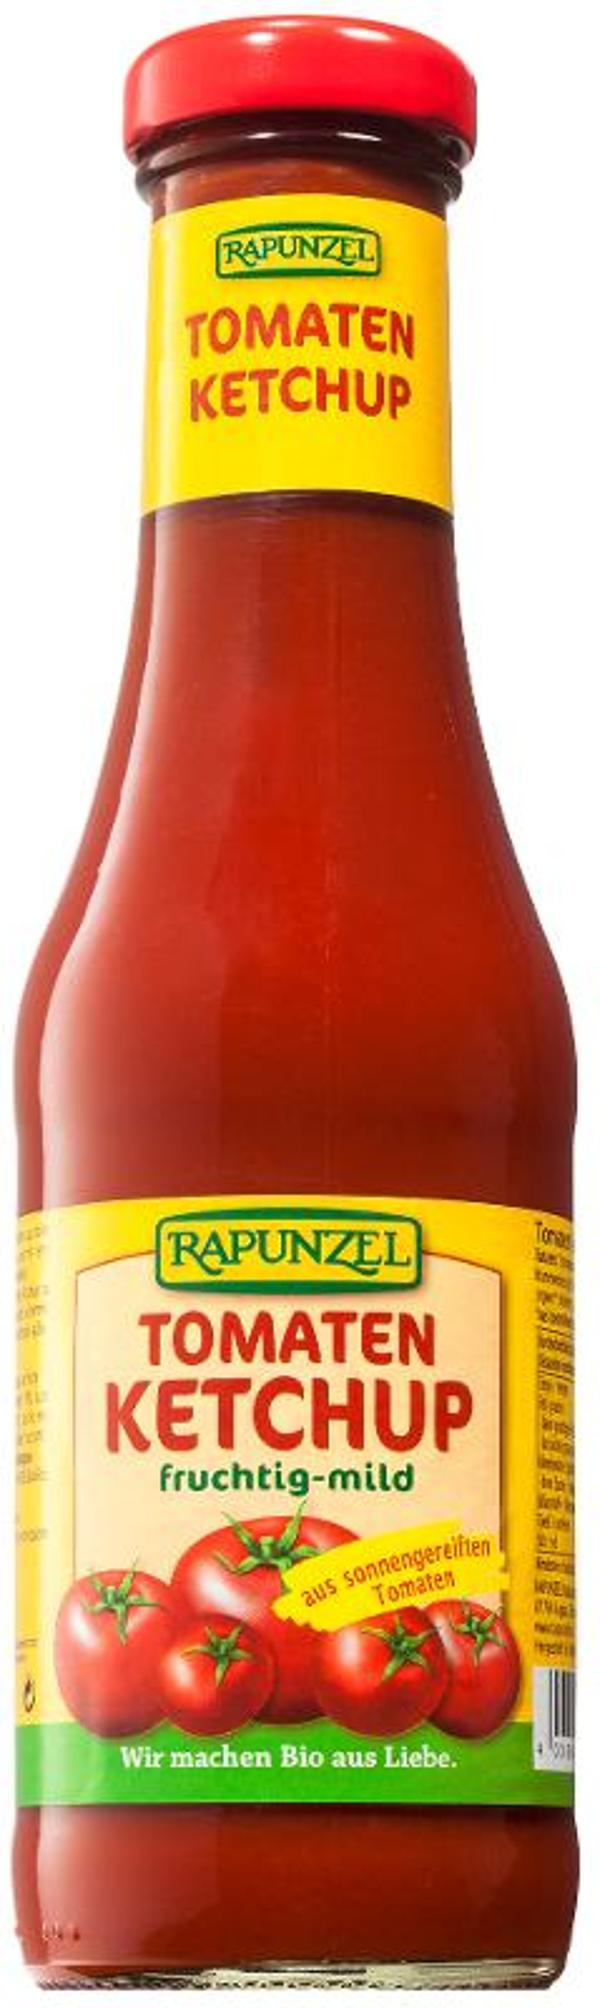 Produktfoto zu Ketchup 450 ml Rapunzel